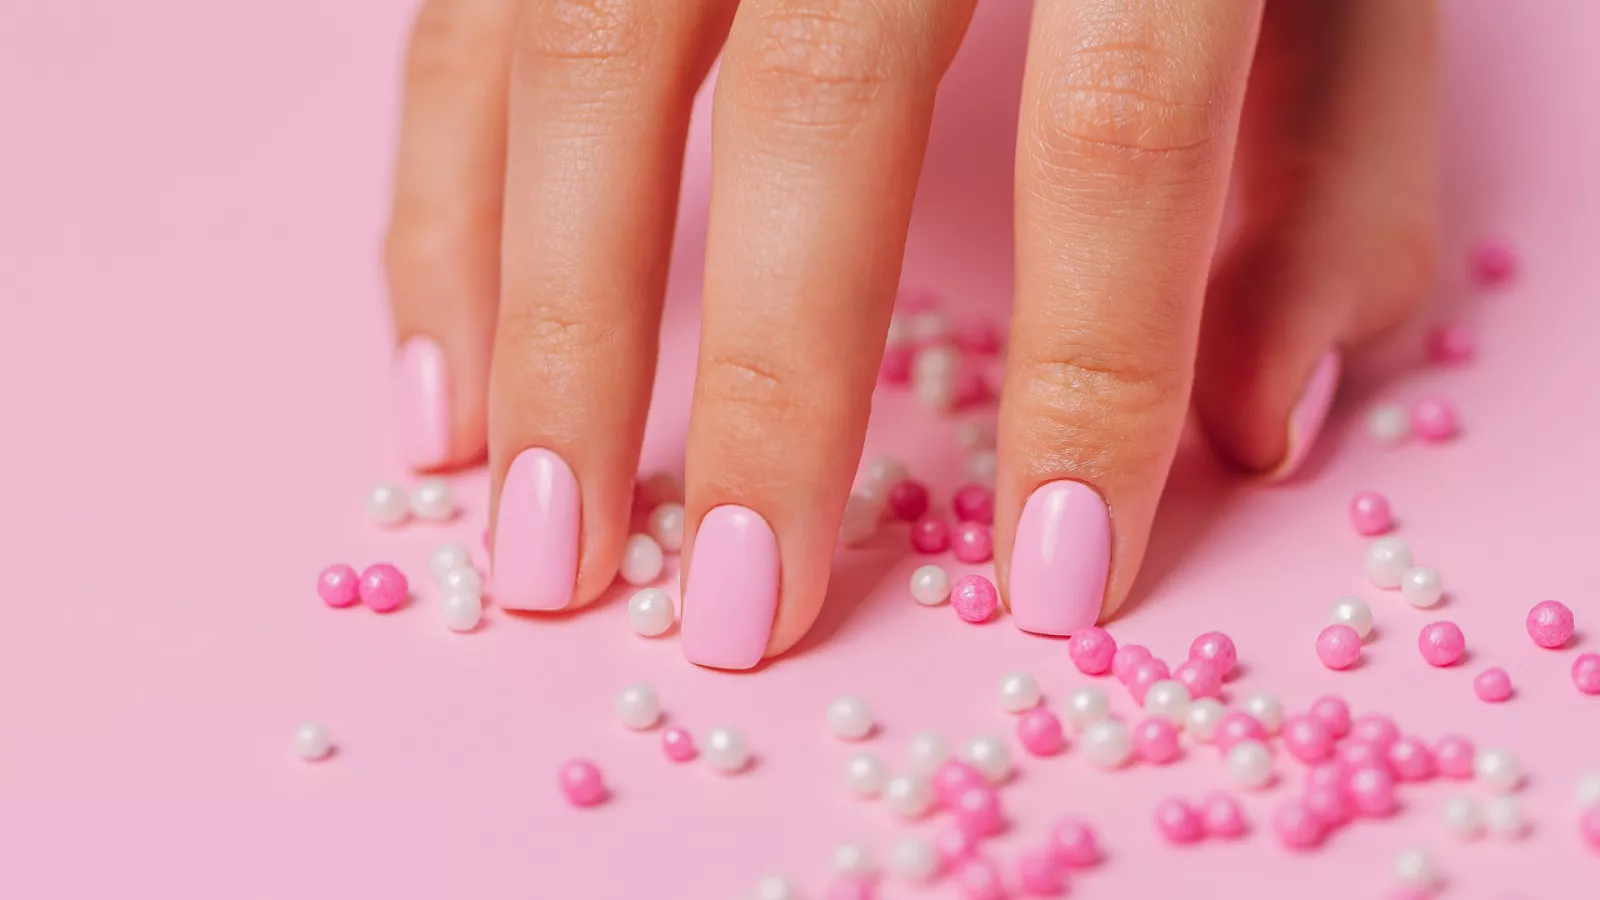  1001  ideas de diseños de uñas según las últimas tendencias  Uñas  decoradas con lineas Manicura de uñas Diseños de uñas con puntos